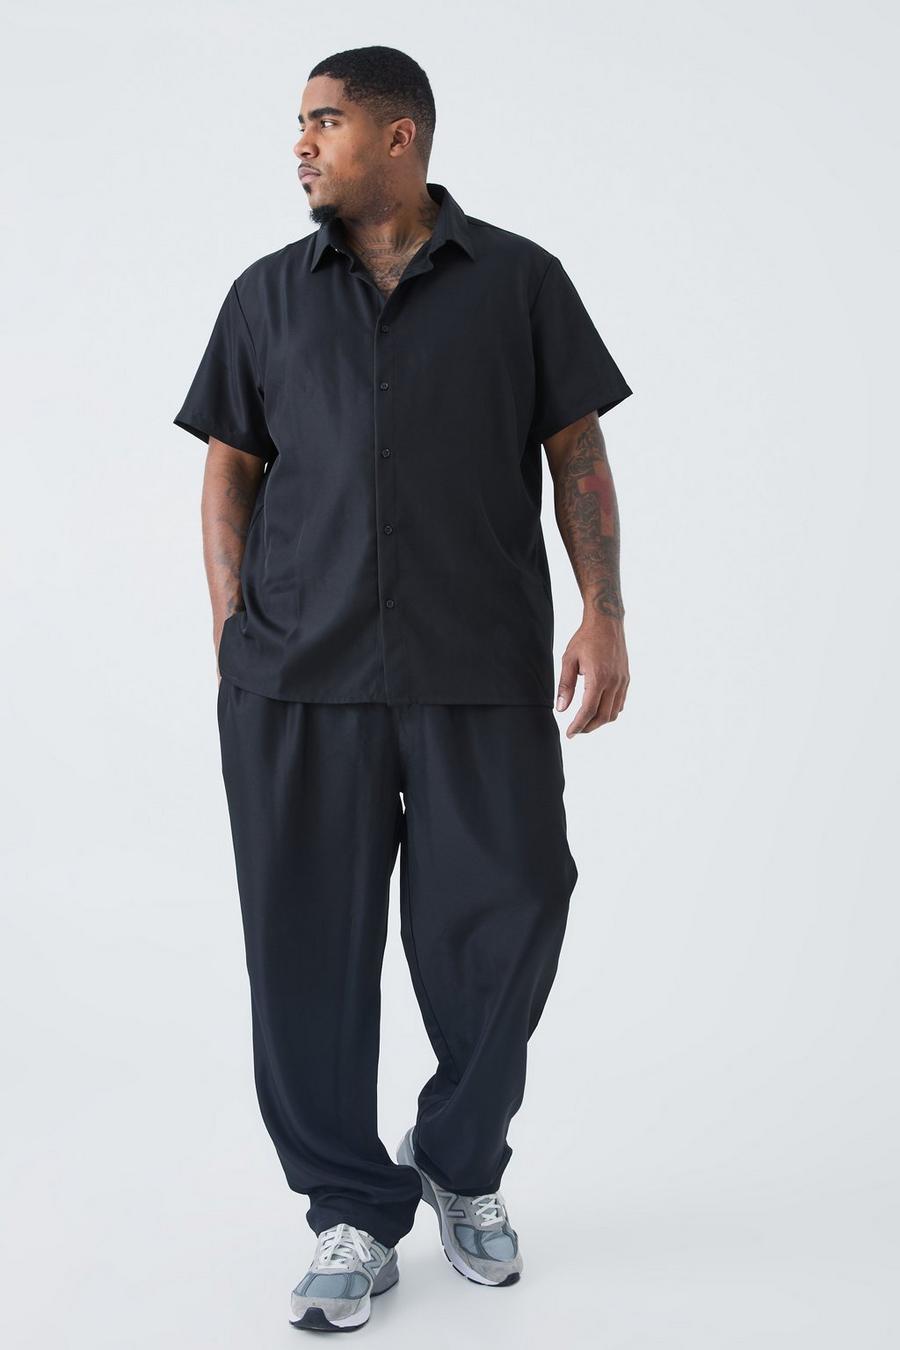 Black Plus Zacht Keperstof Net Overhemd Met Korte Mouwen En Broek